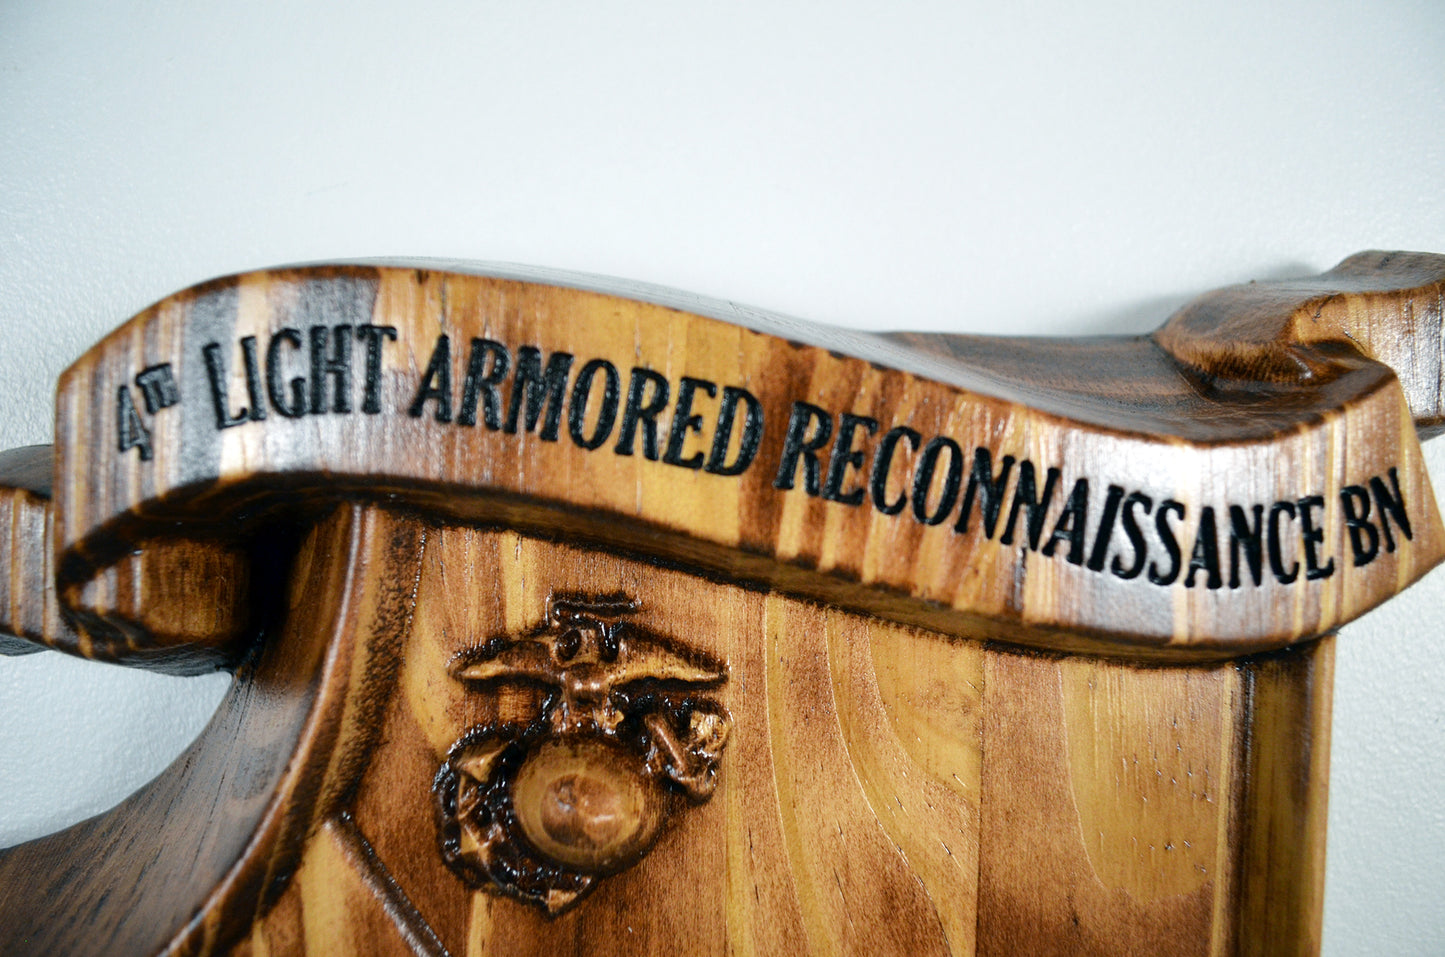 USMC 4th Light Armored Reconnaissance Battalion, USMC 3d wood carving